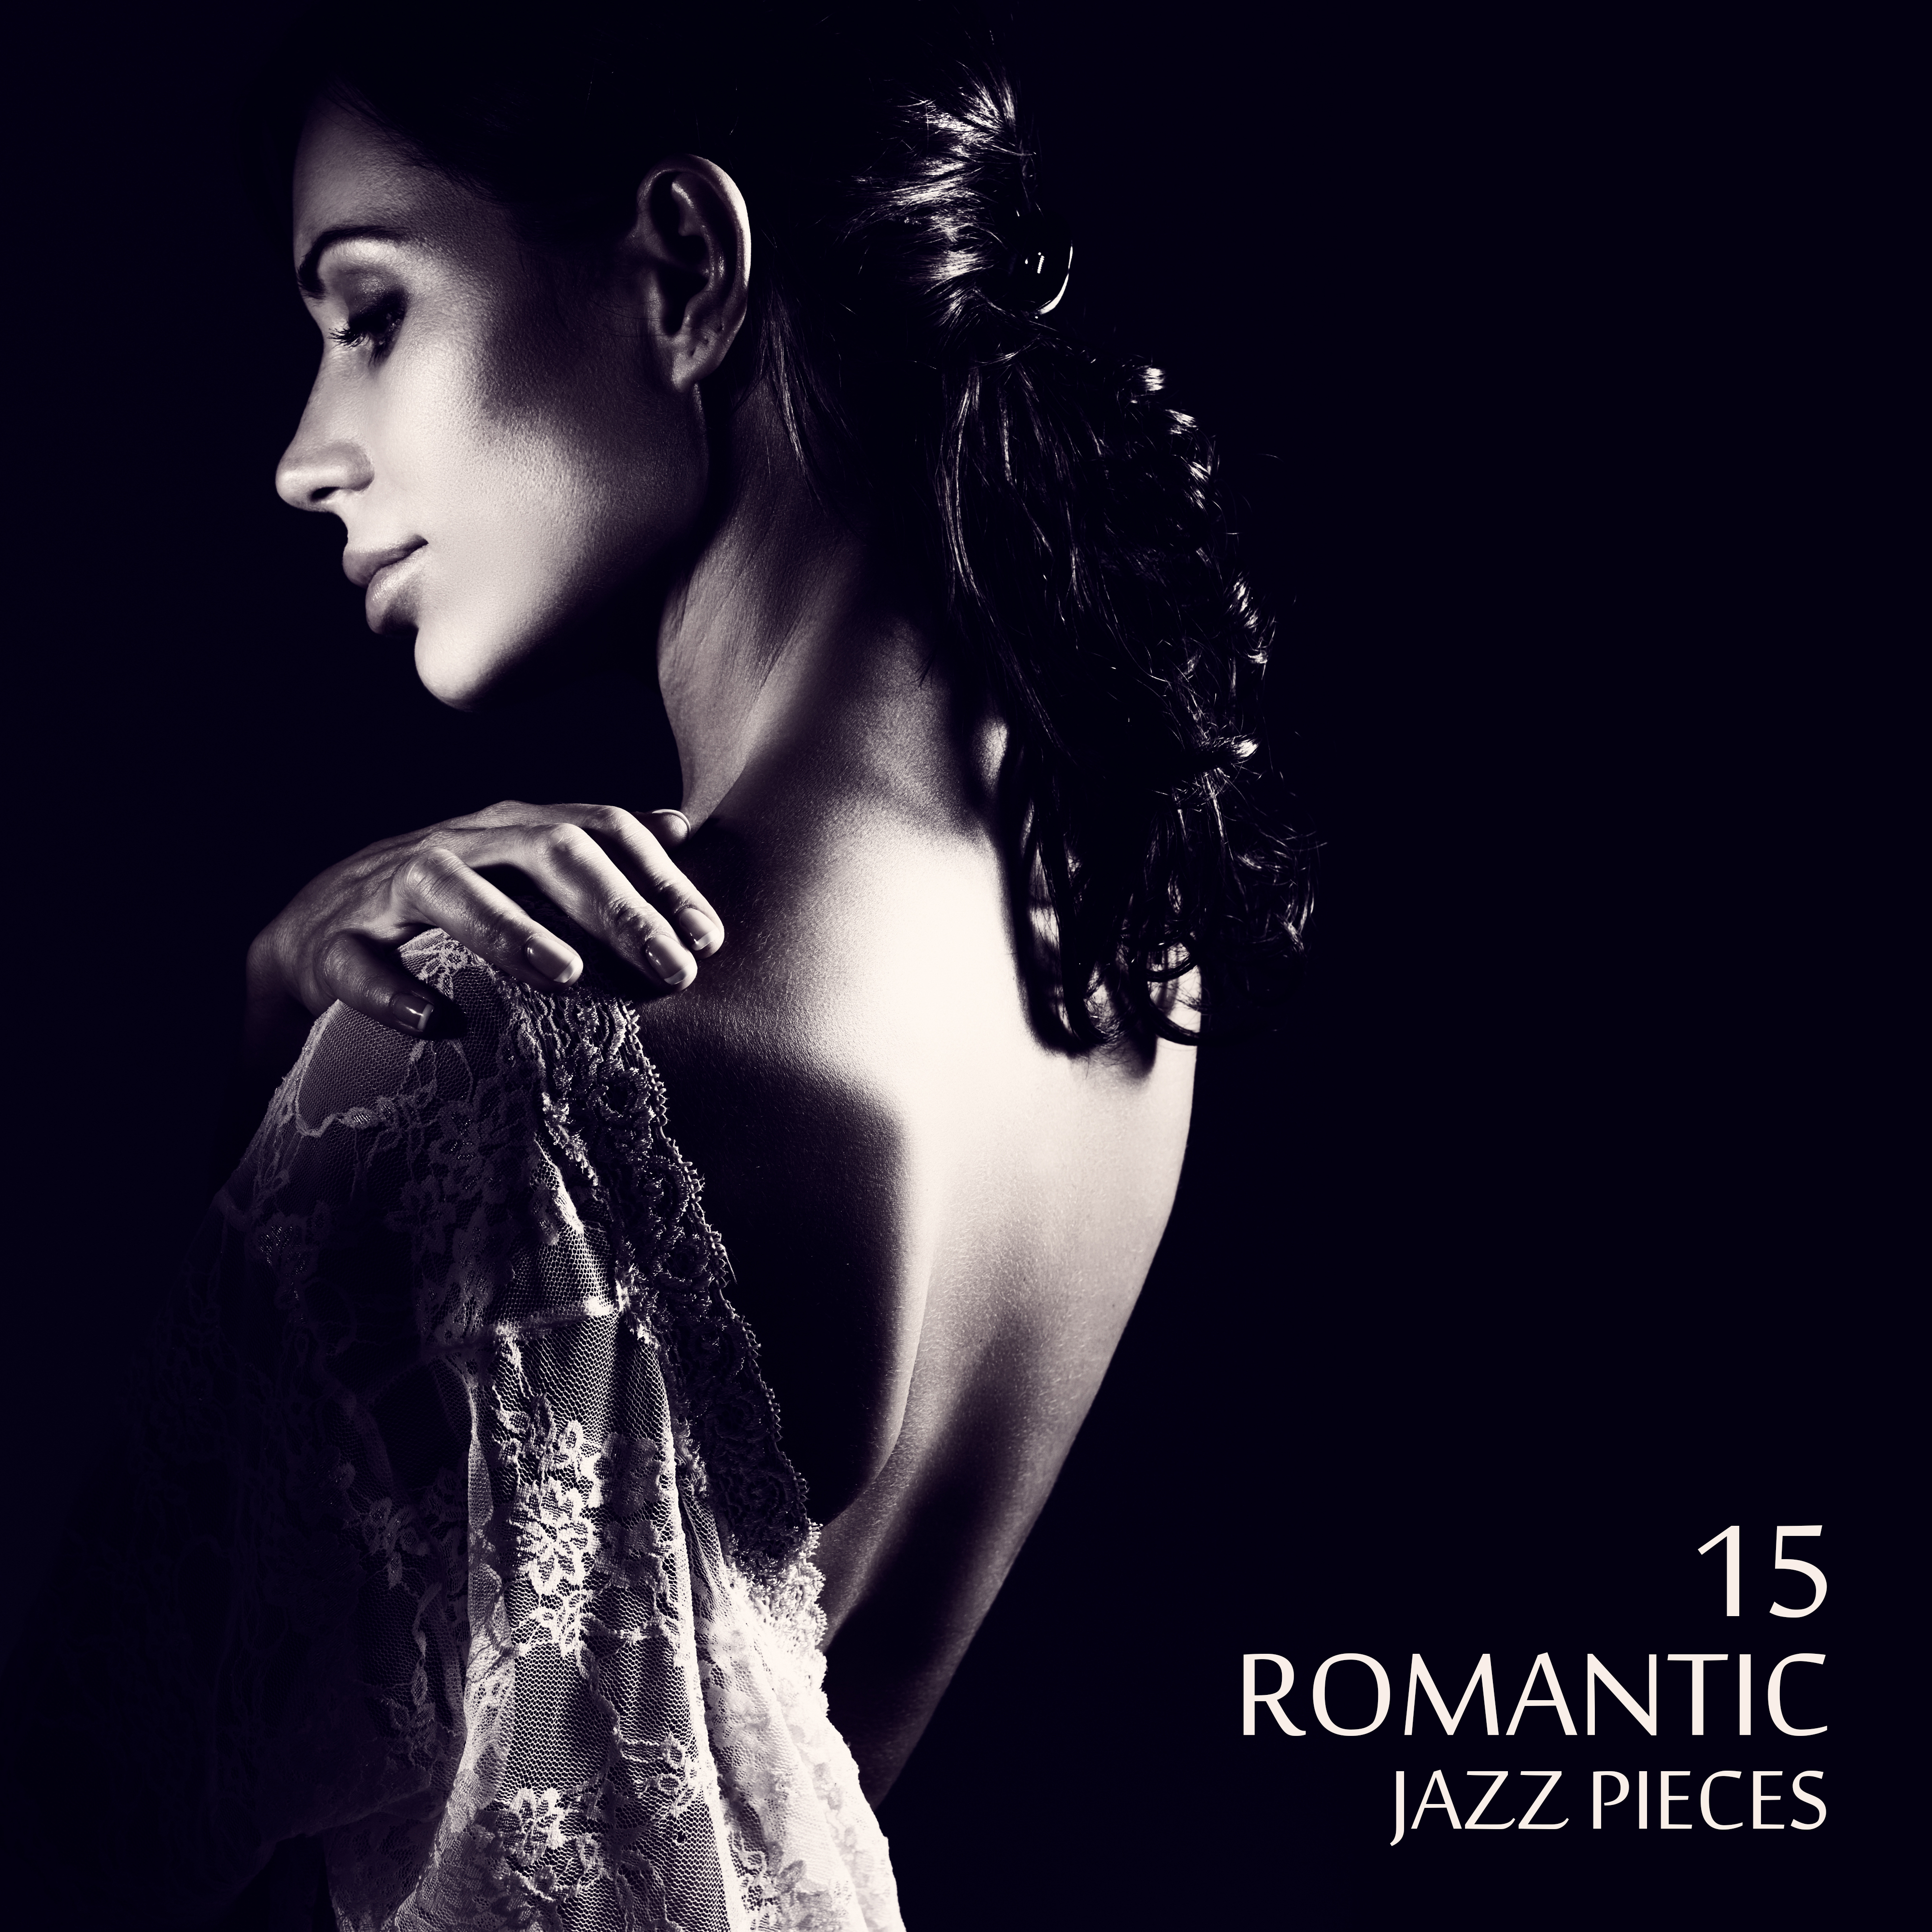 15 Romantic Jazz Pieces